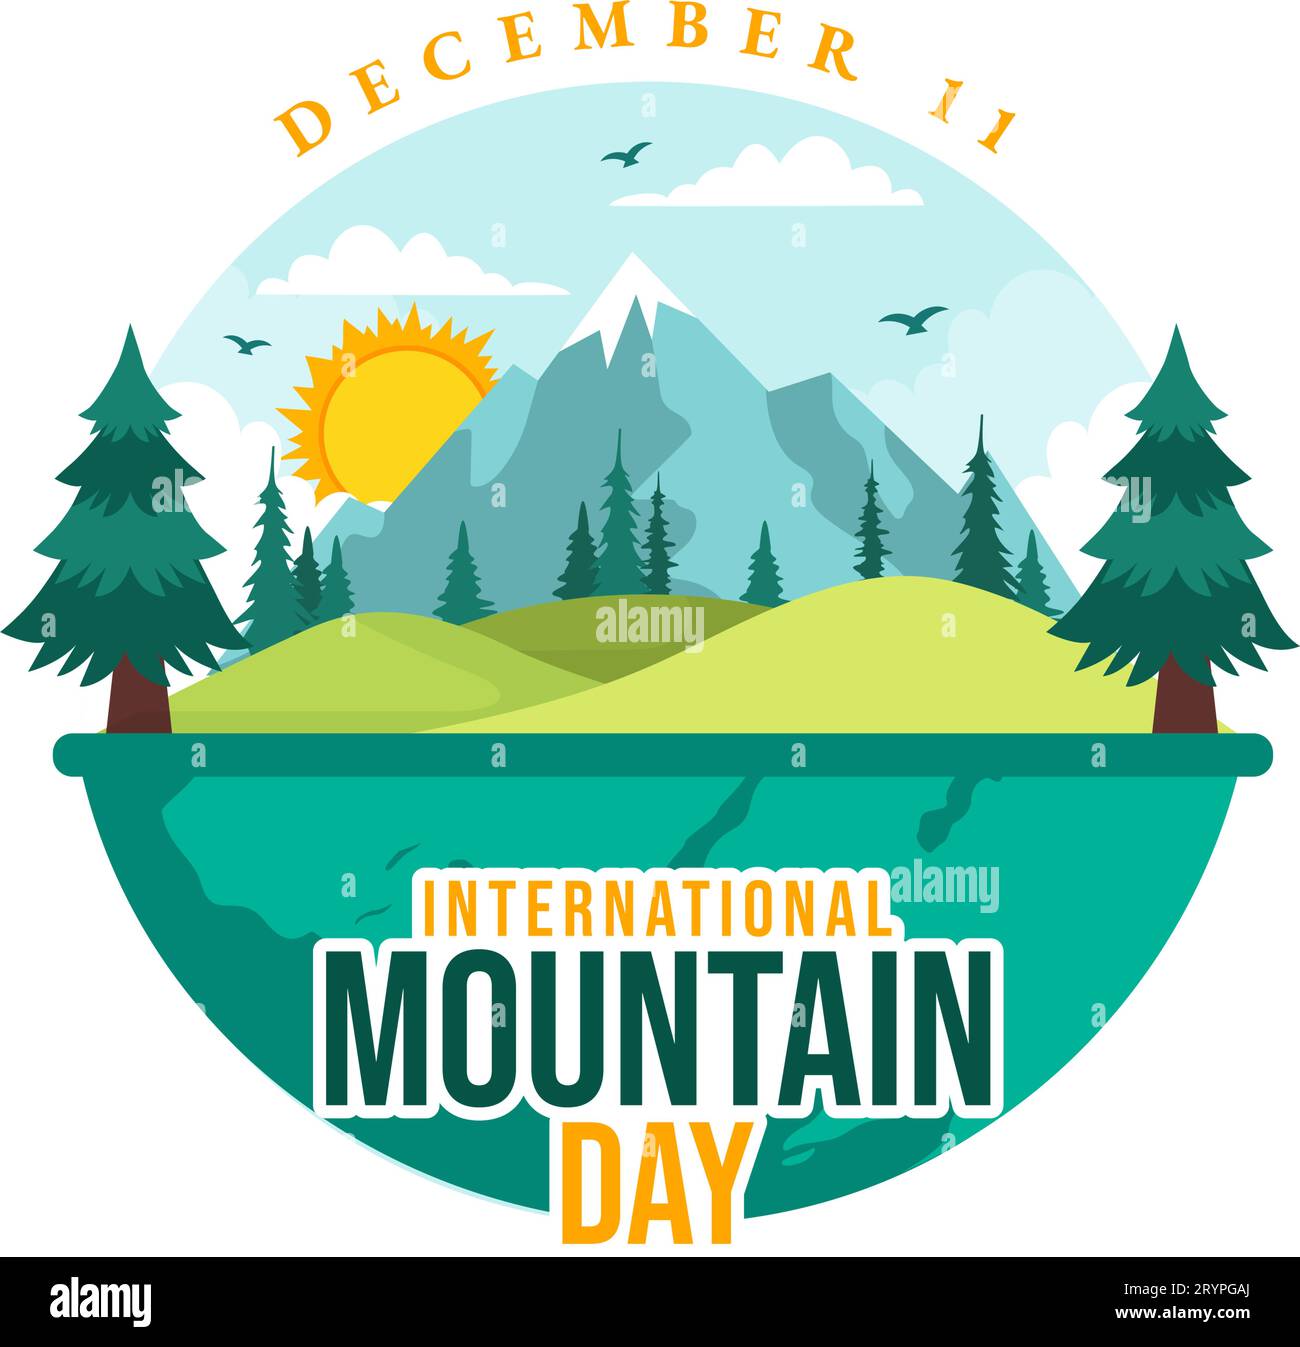 International Mountain Day Vector Illustration am 11. Dezember mit Bergpanorama, Green Valley und Bäumen in Flat Cartoon Hintergrund Design Stock Vektor